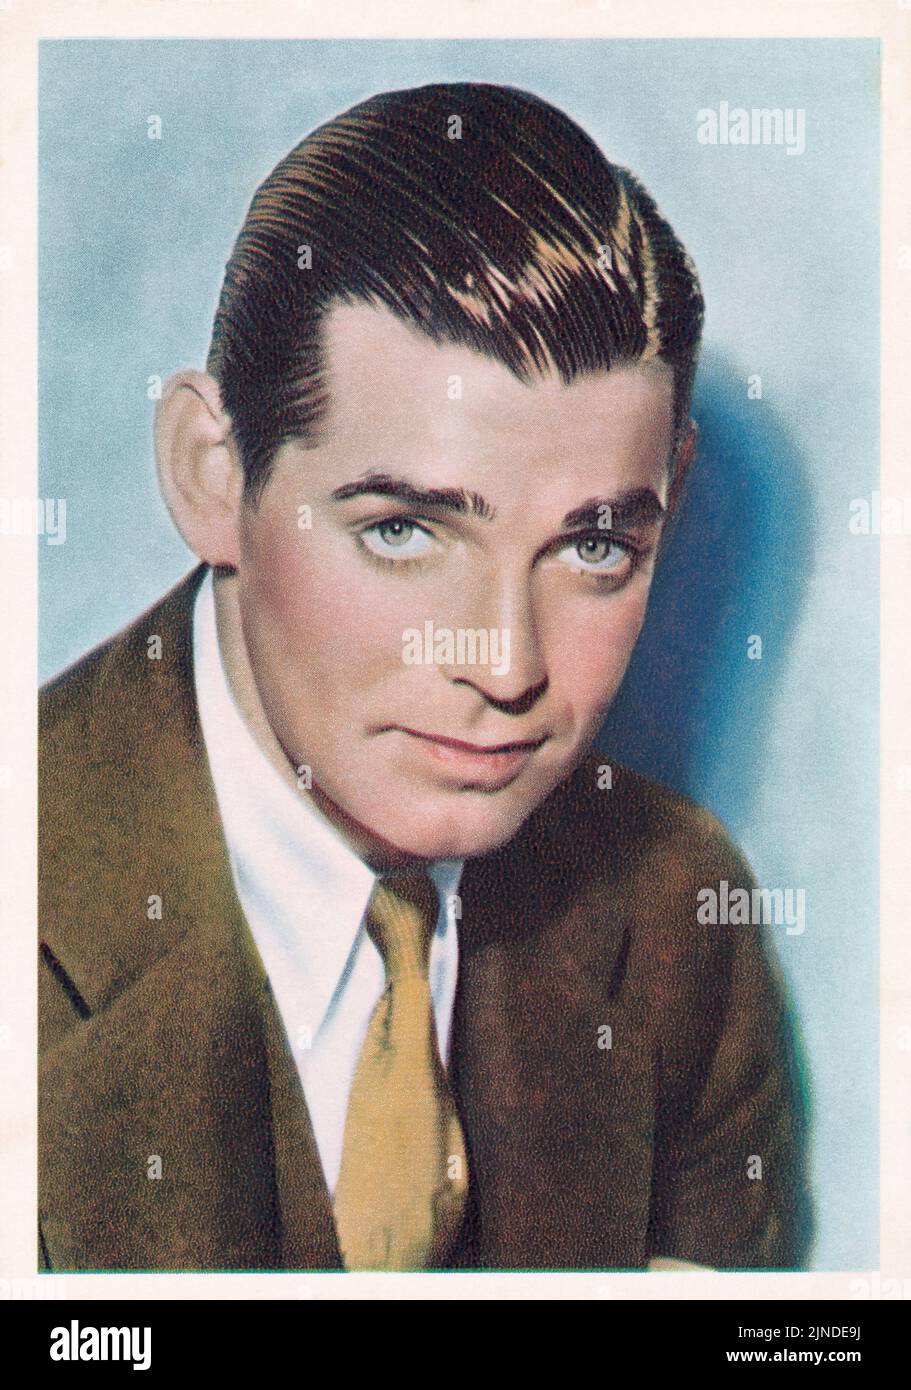 Actor Clark Gable on a vintage De Reszke cigarette card. Stock Photo